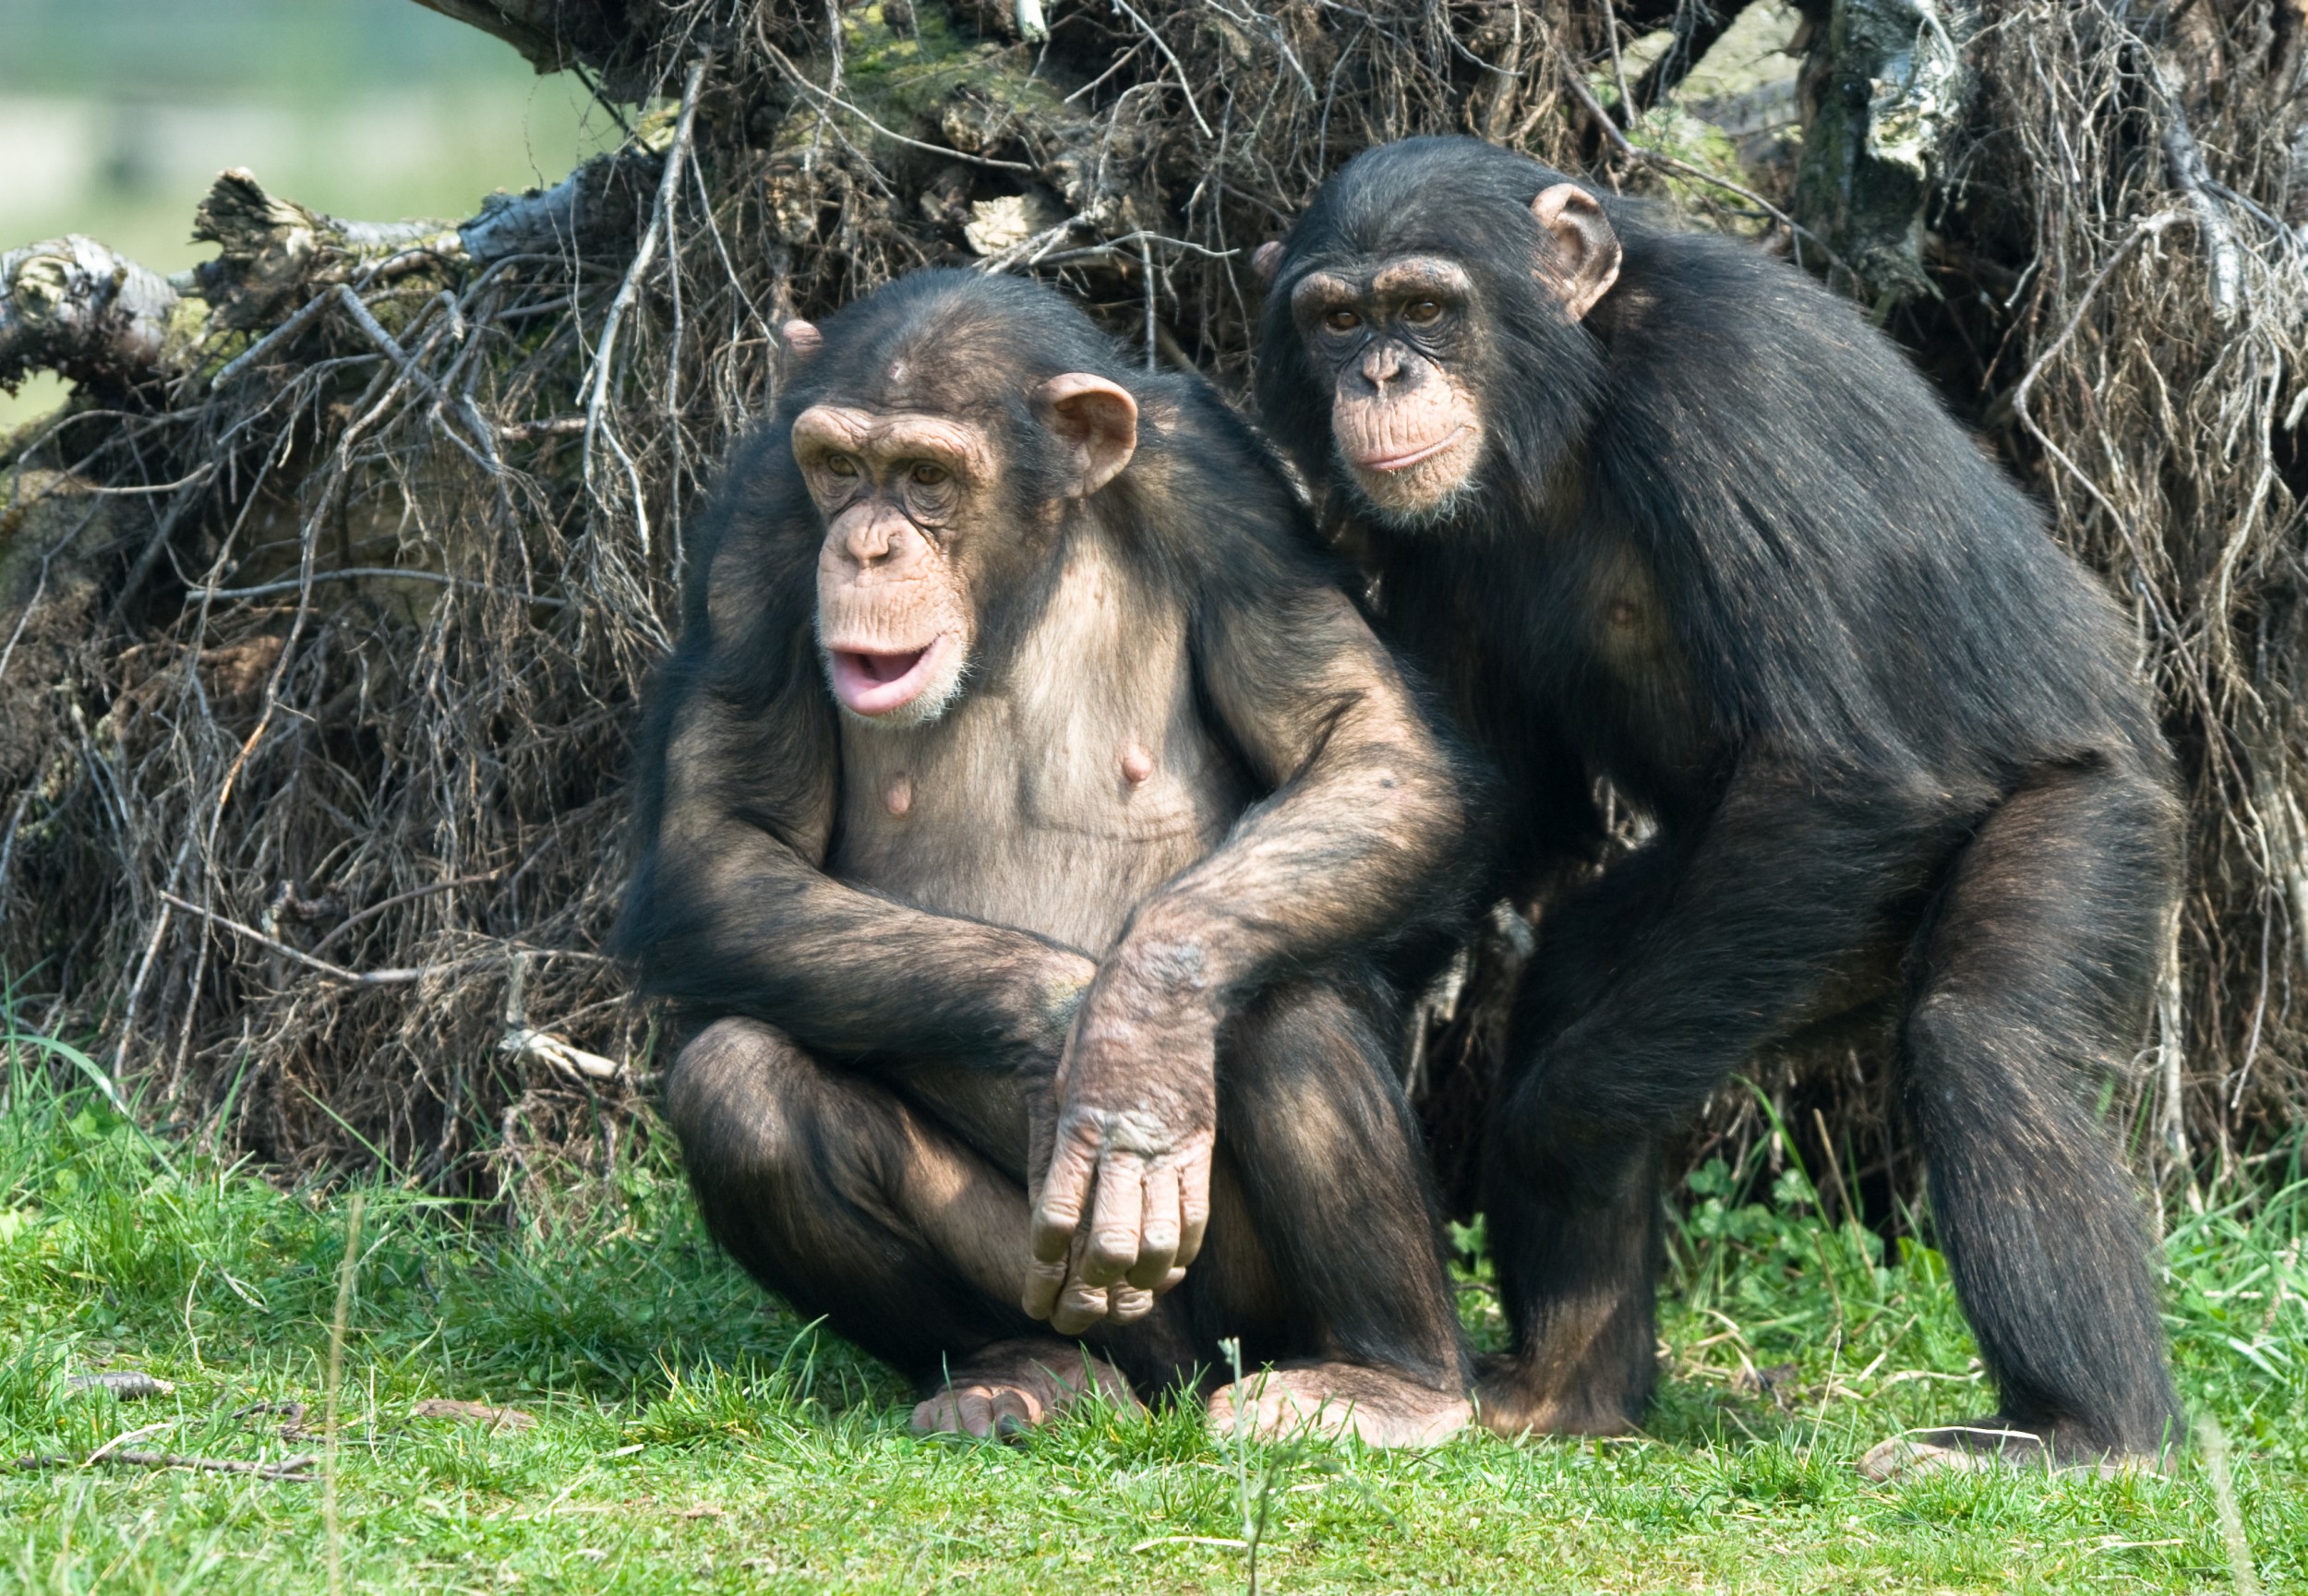 O que diferencia humanos de macacos?